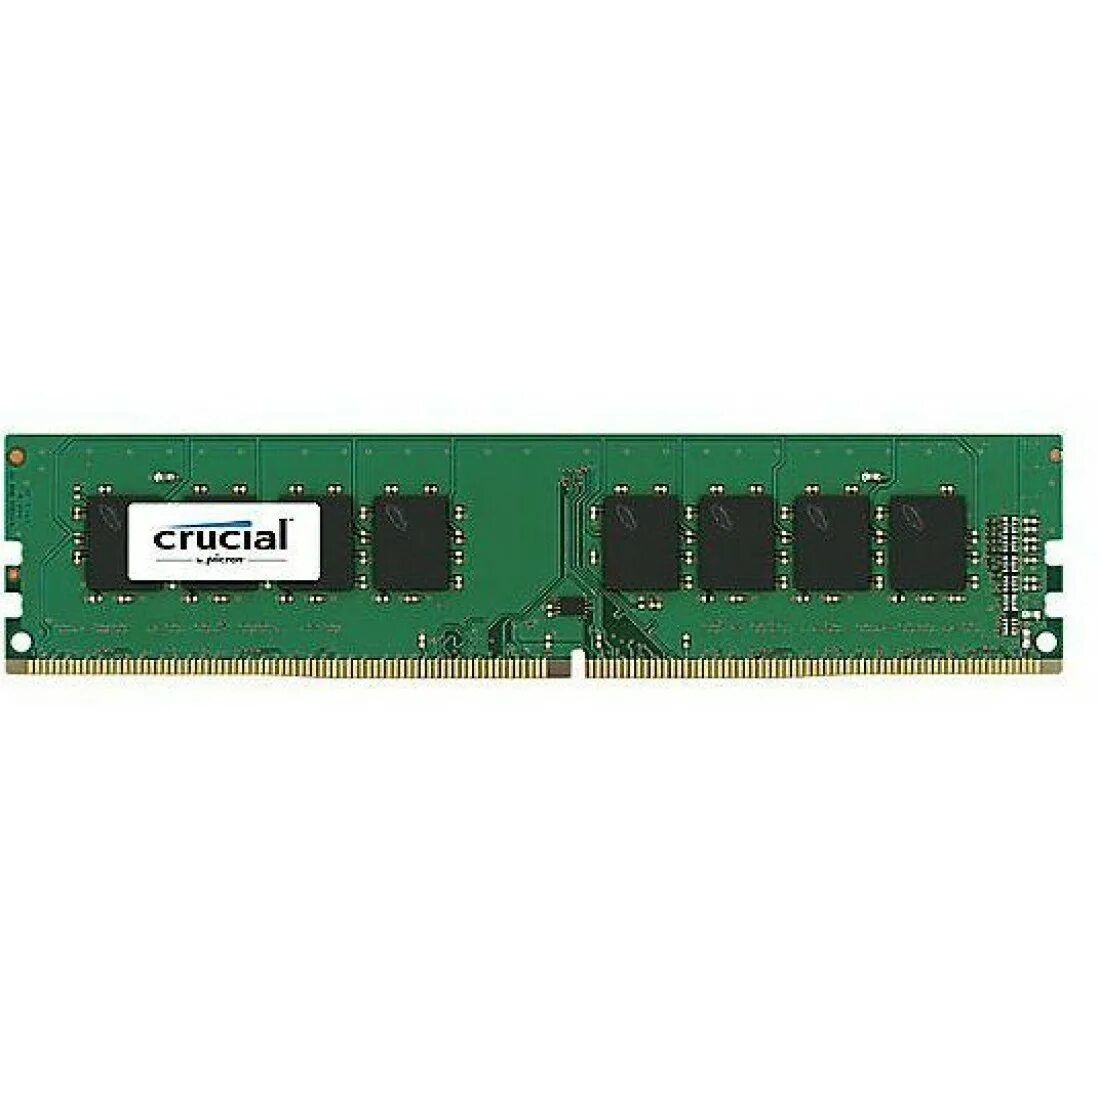 Crucial ddr4 DIMM 8 GB ct8g4dfra266 pc4-21300, 2666mhz. Crucial ddr4 16gb 2666mhz. Crucial 8gb ddr4 3200mhz. GOODRAM gr2666d464l19s/4g. Купить оперативную память crucial